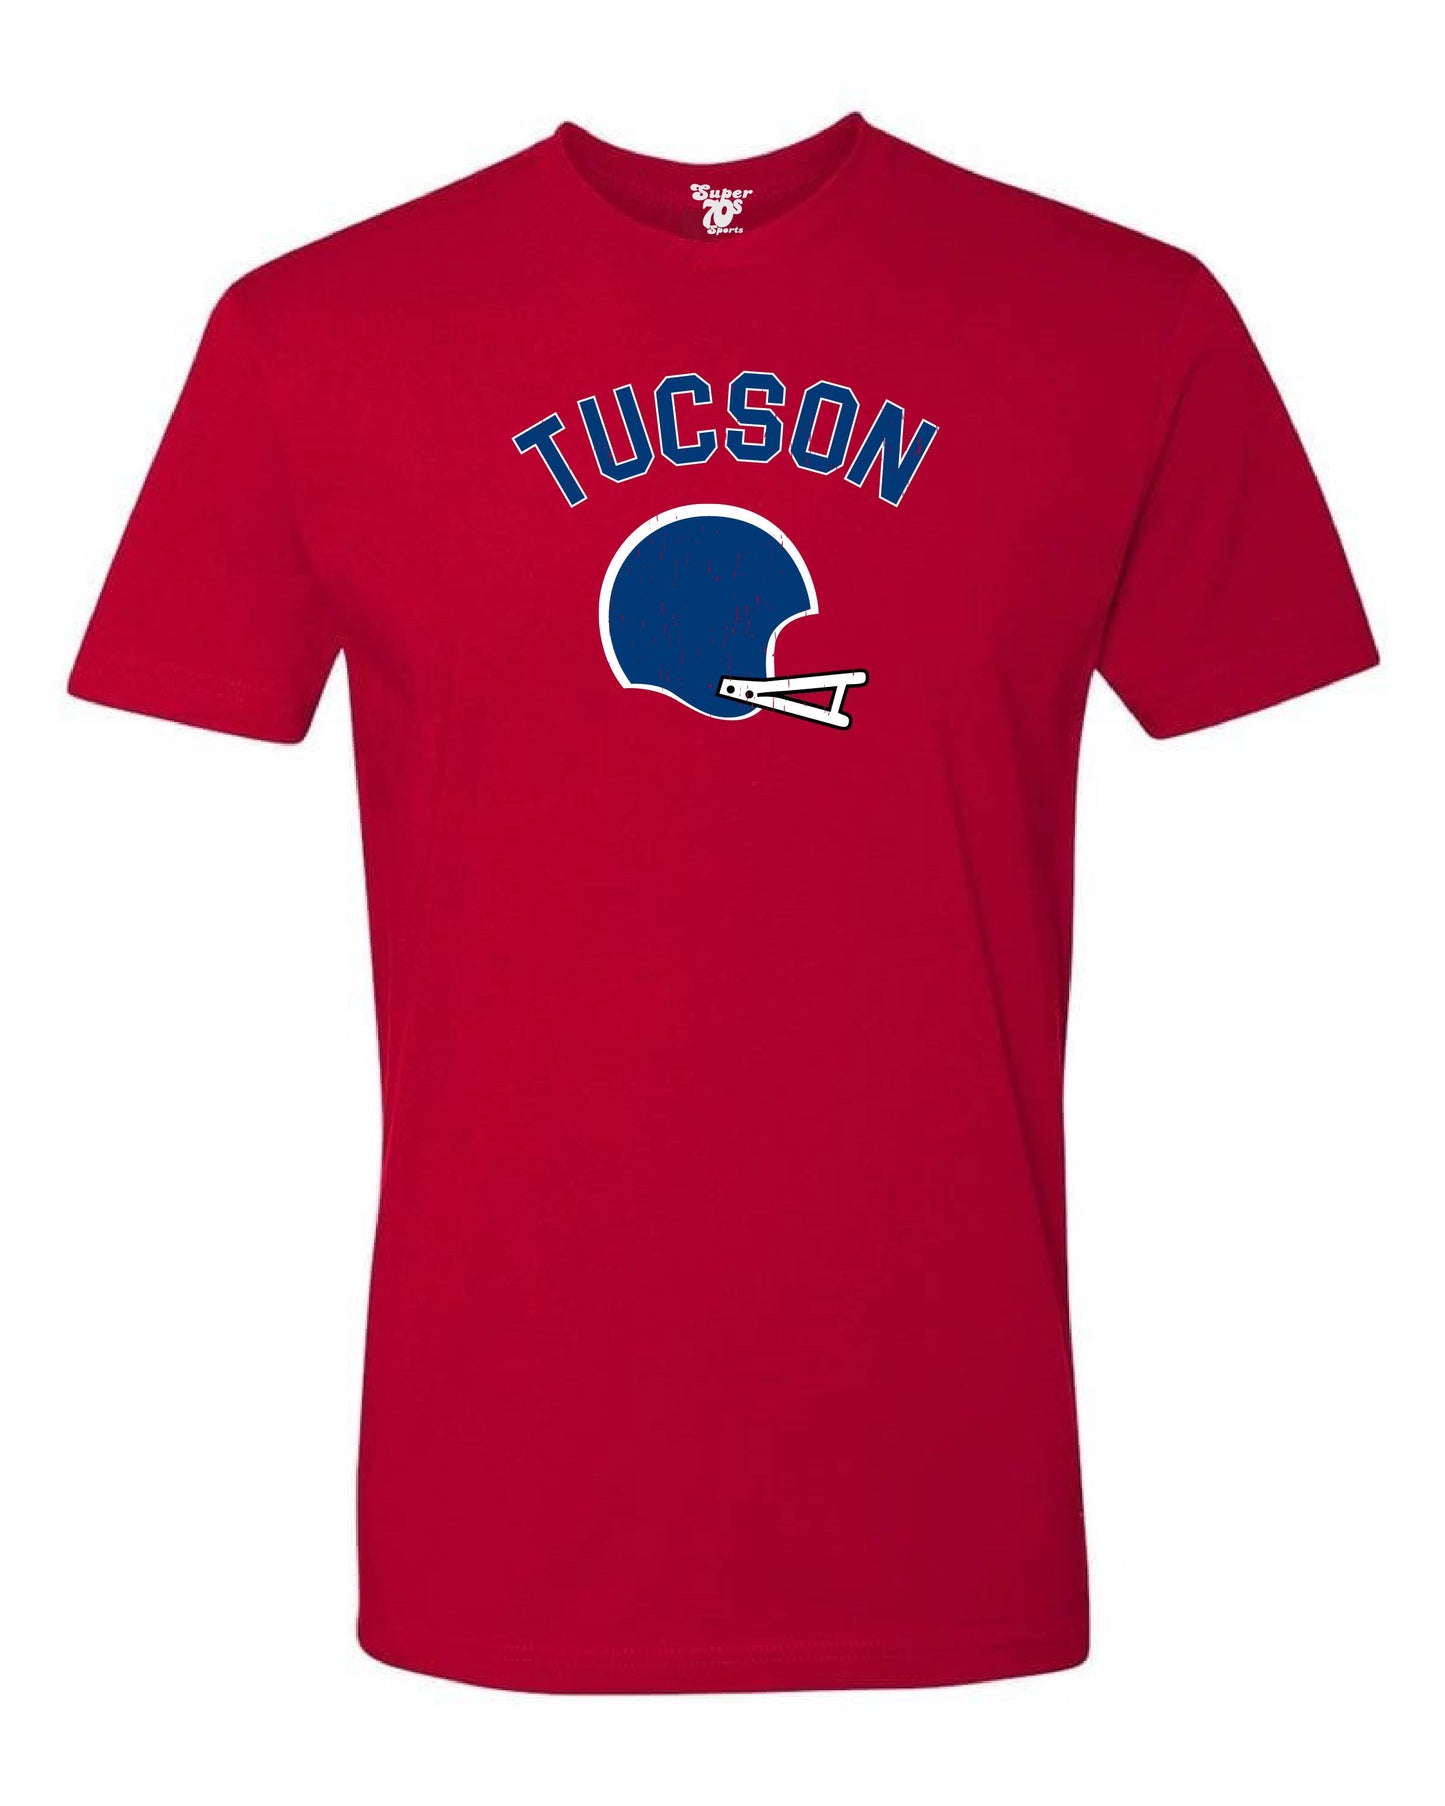 Tucson Football Tee